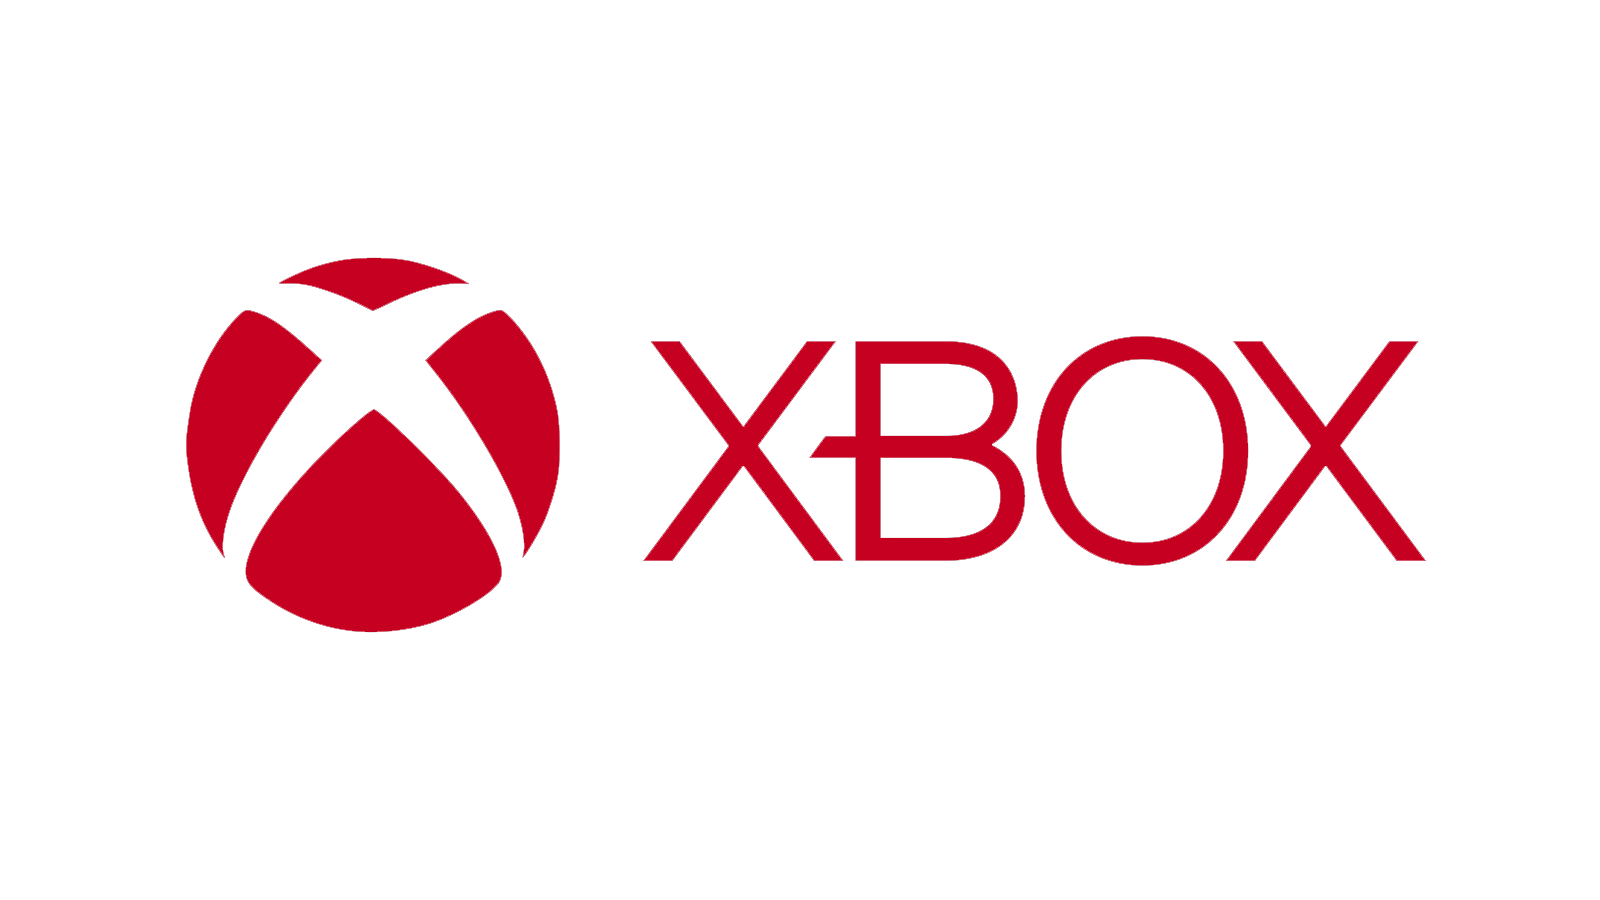 Xboxは、停電によりゲームにアクセスできなくなった後、批判されています